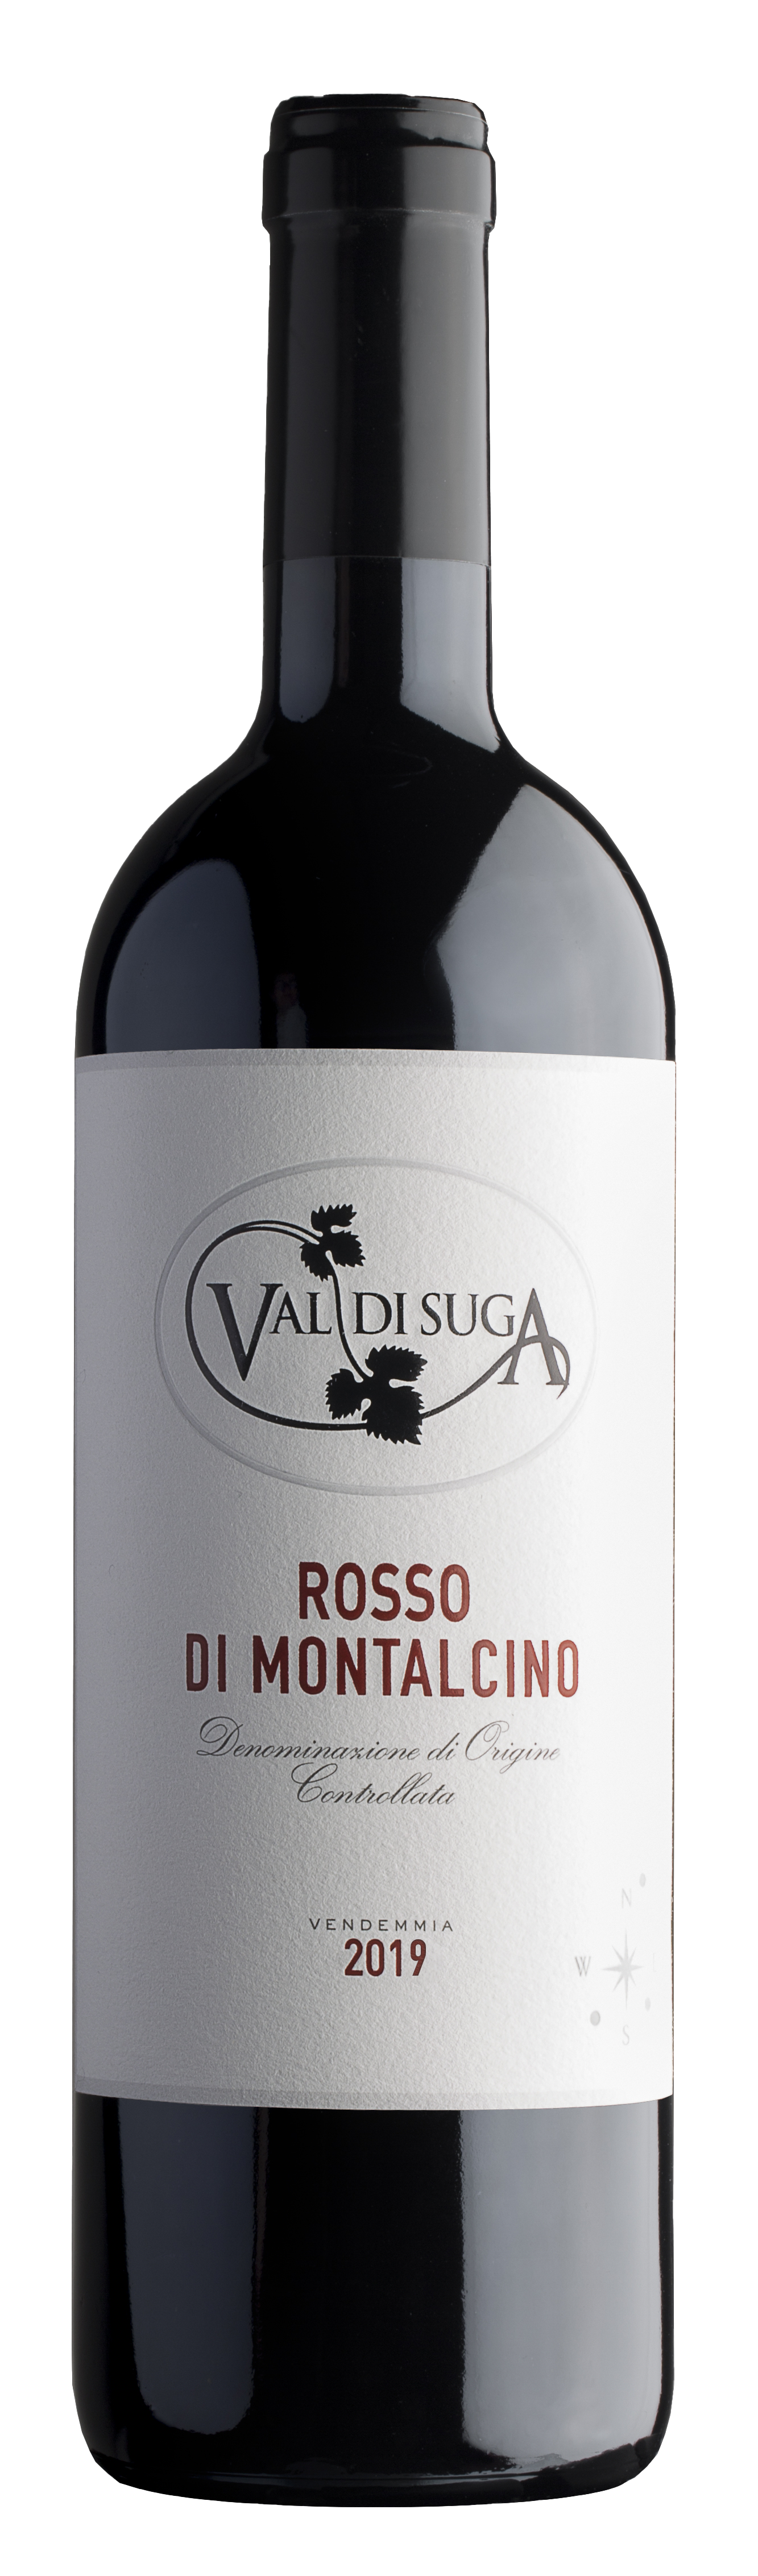 Rosso di Montalcino Val di Suga 2019 bottle shot